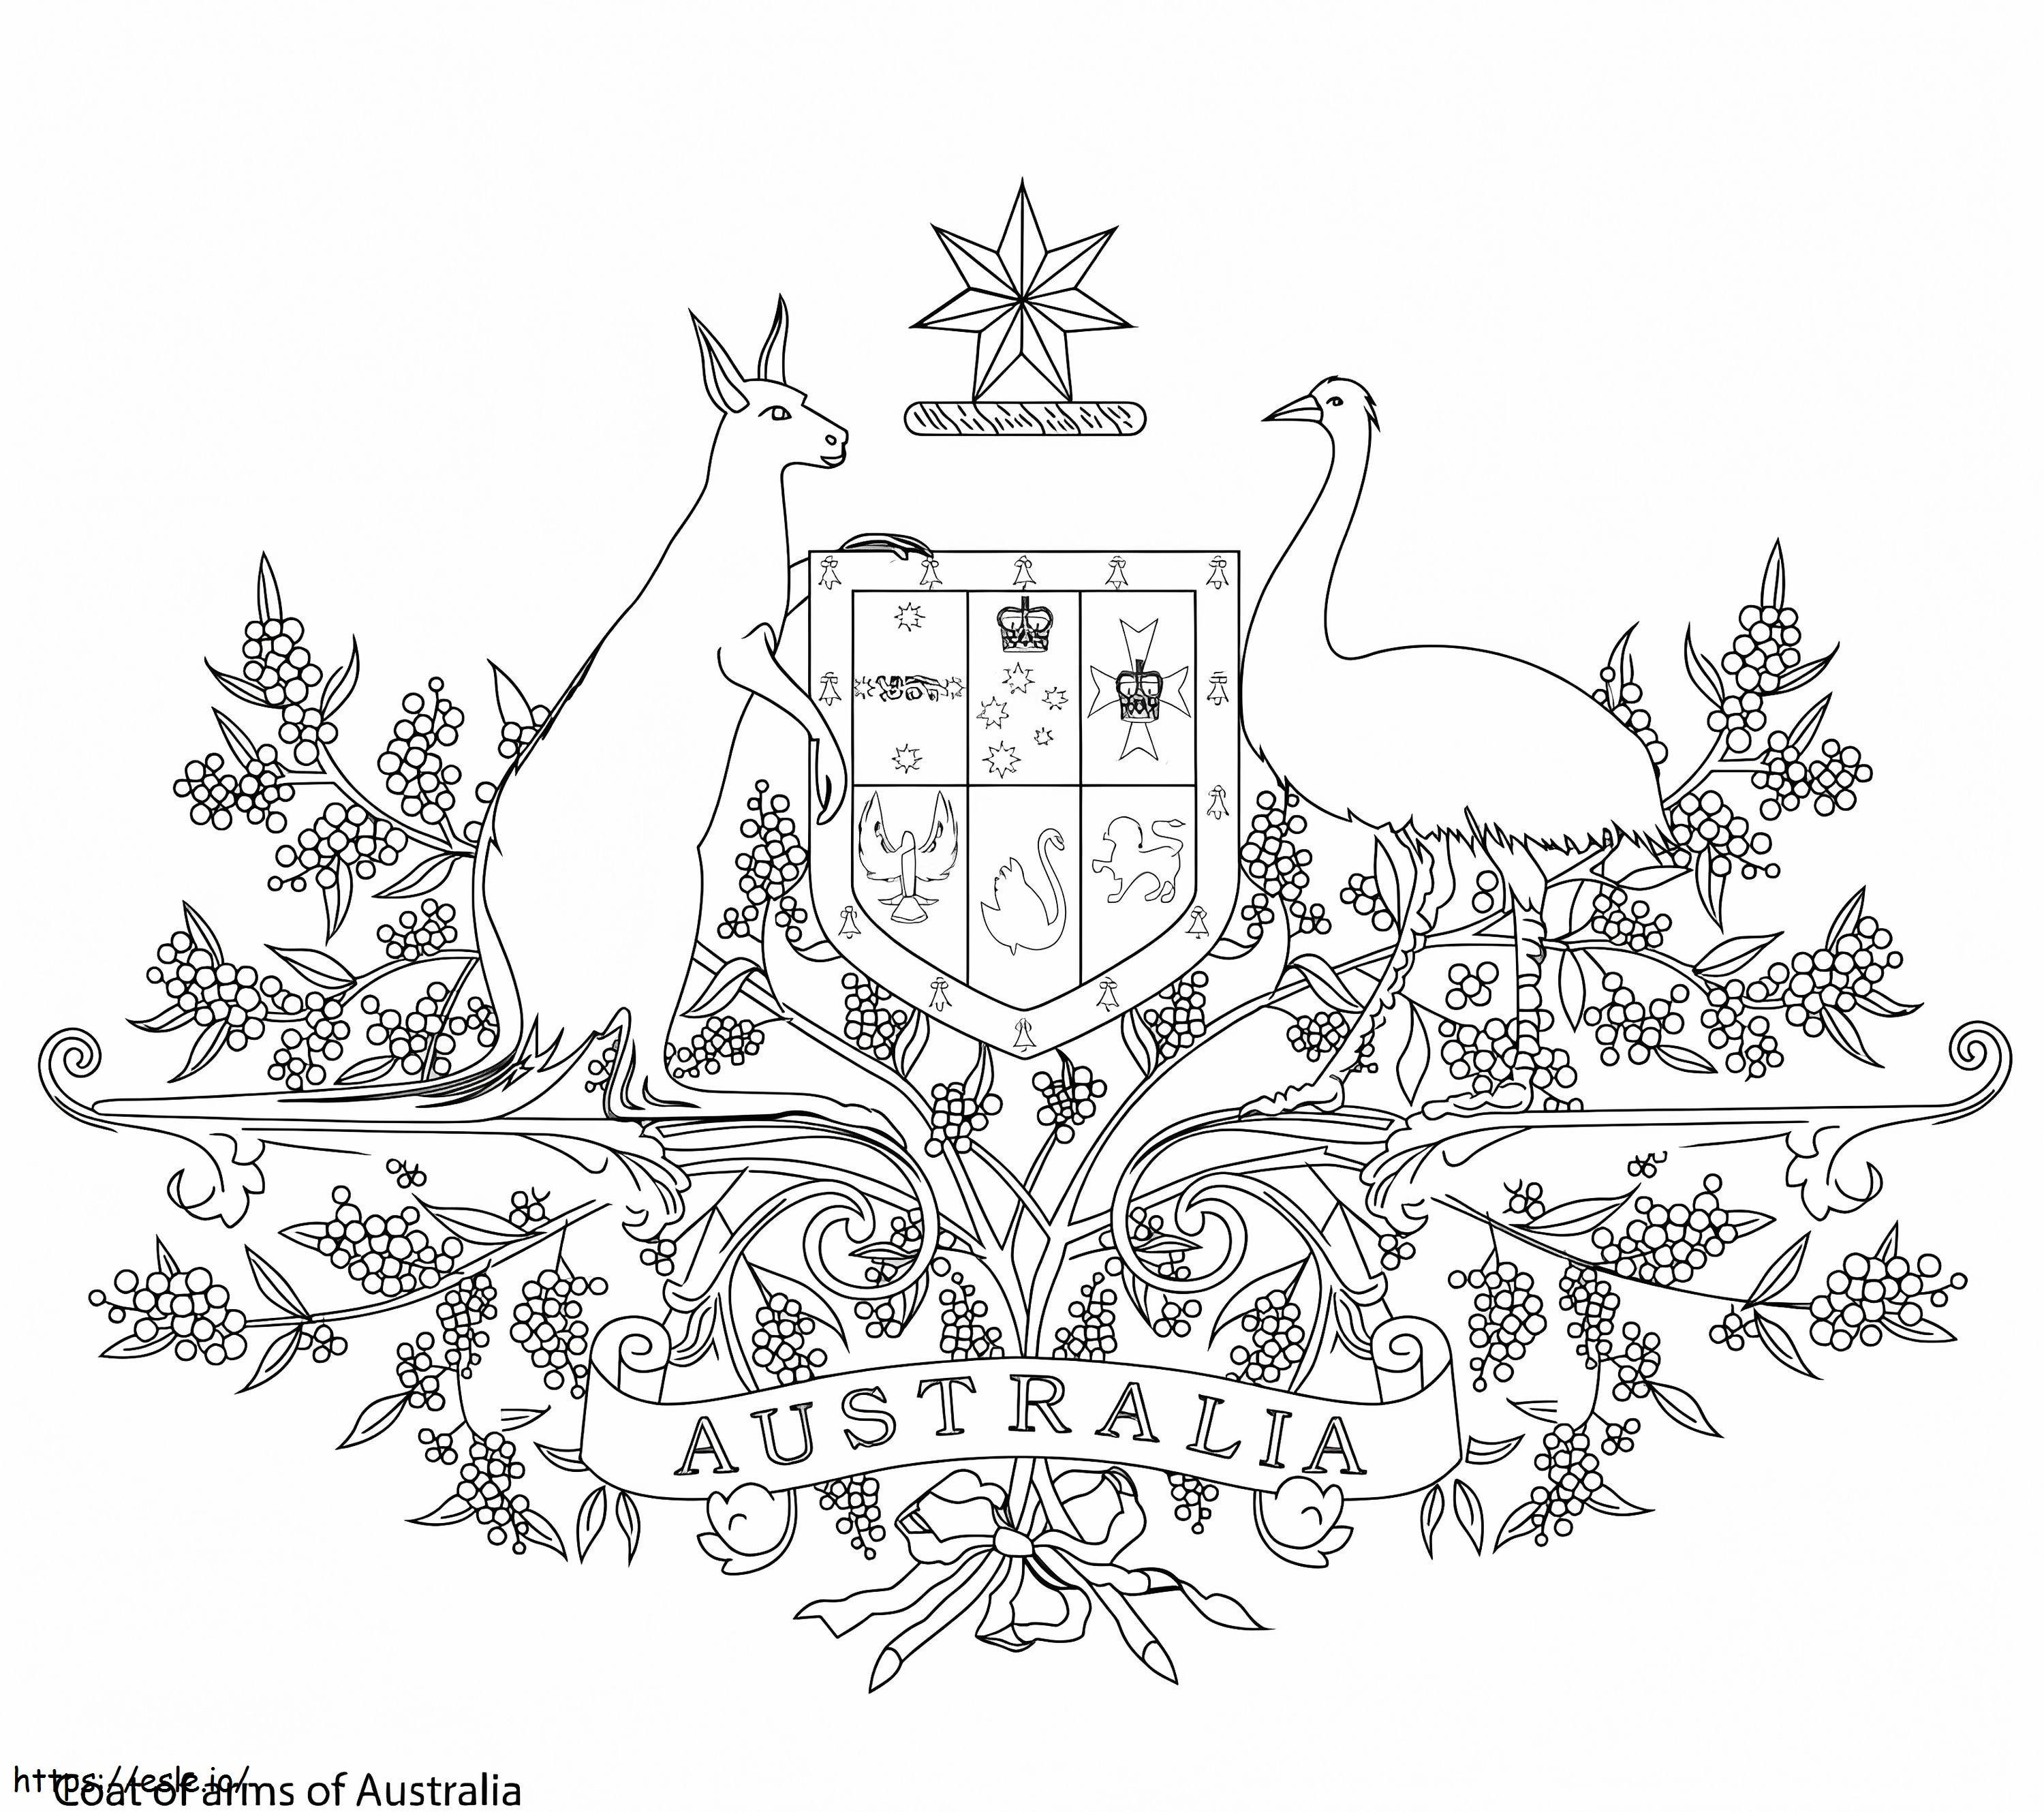 Australisches Wappen ausmalbilder